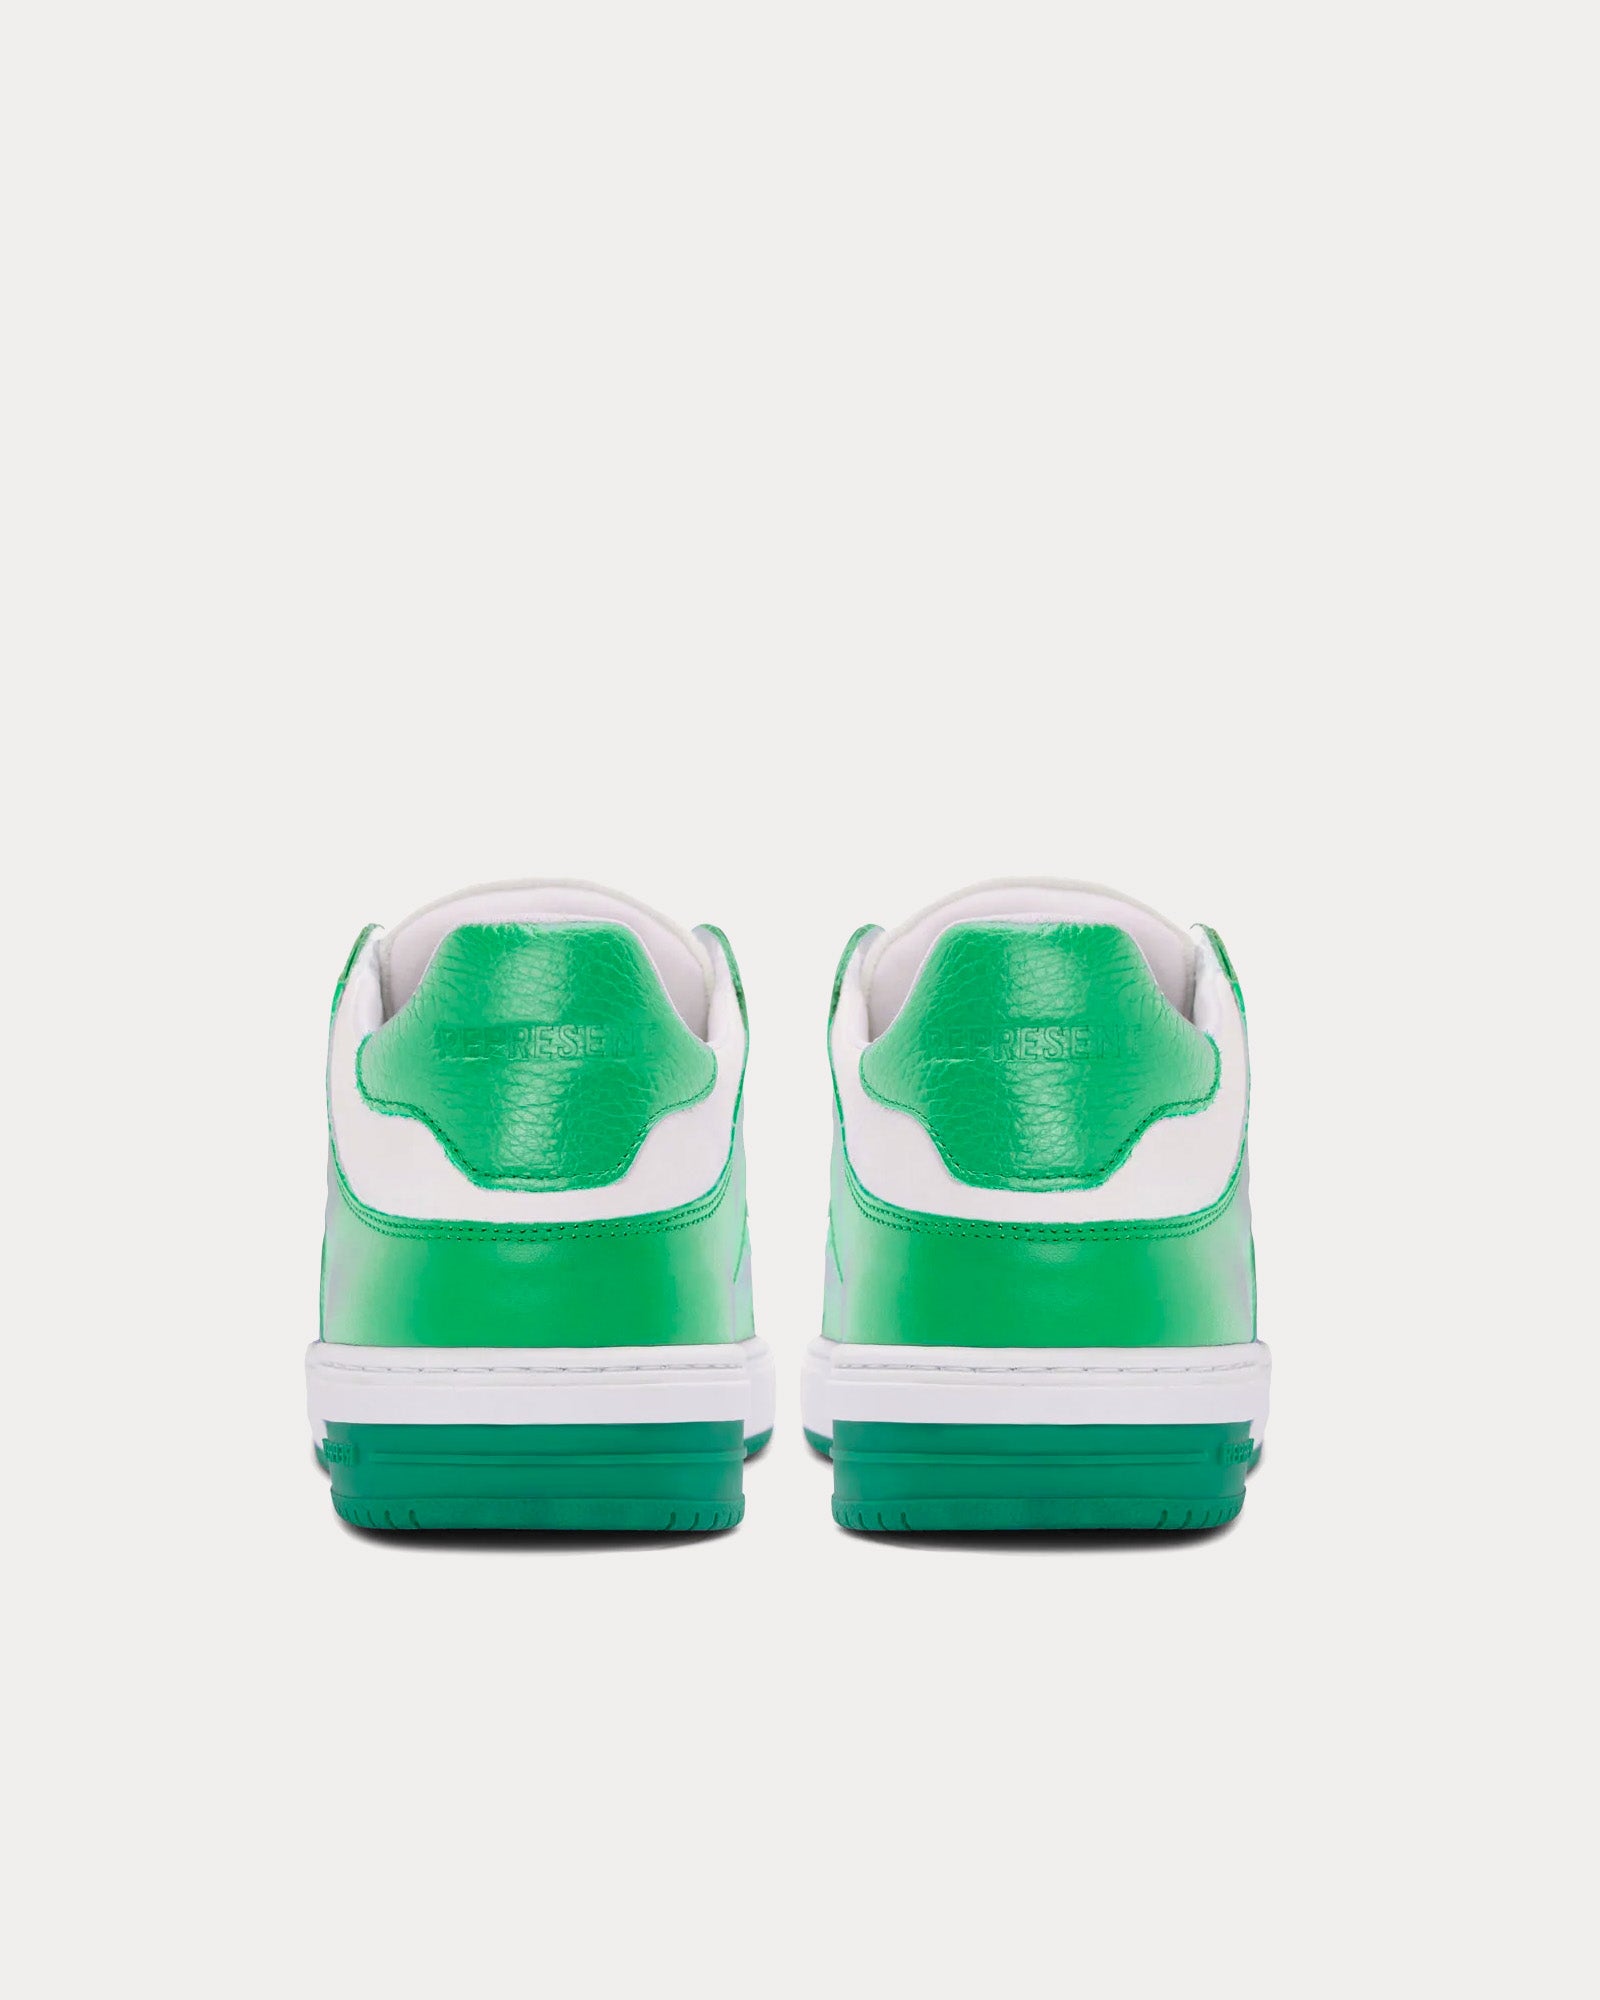 Represent - Apex Island Green Low Top Sneakers